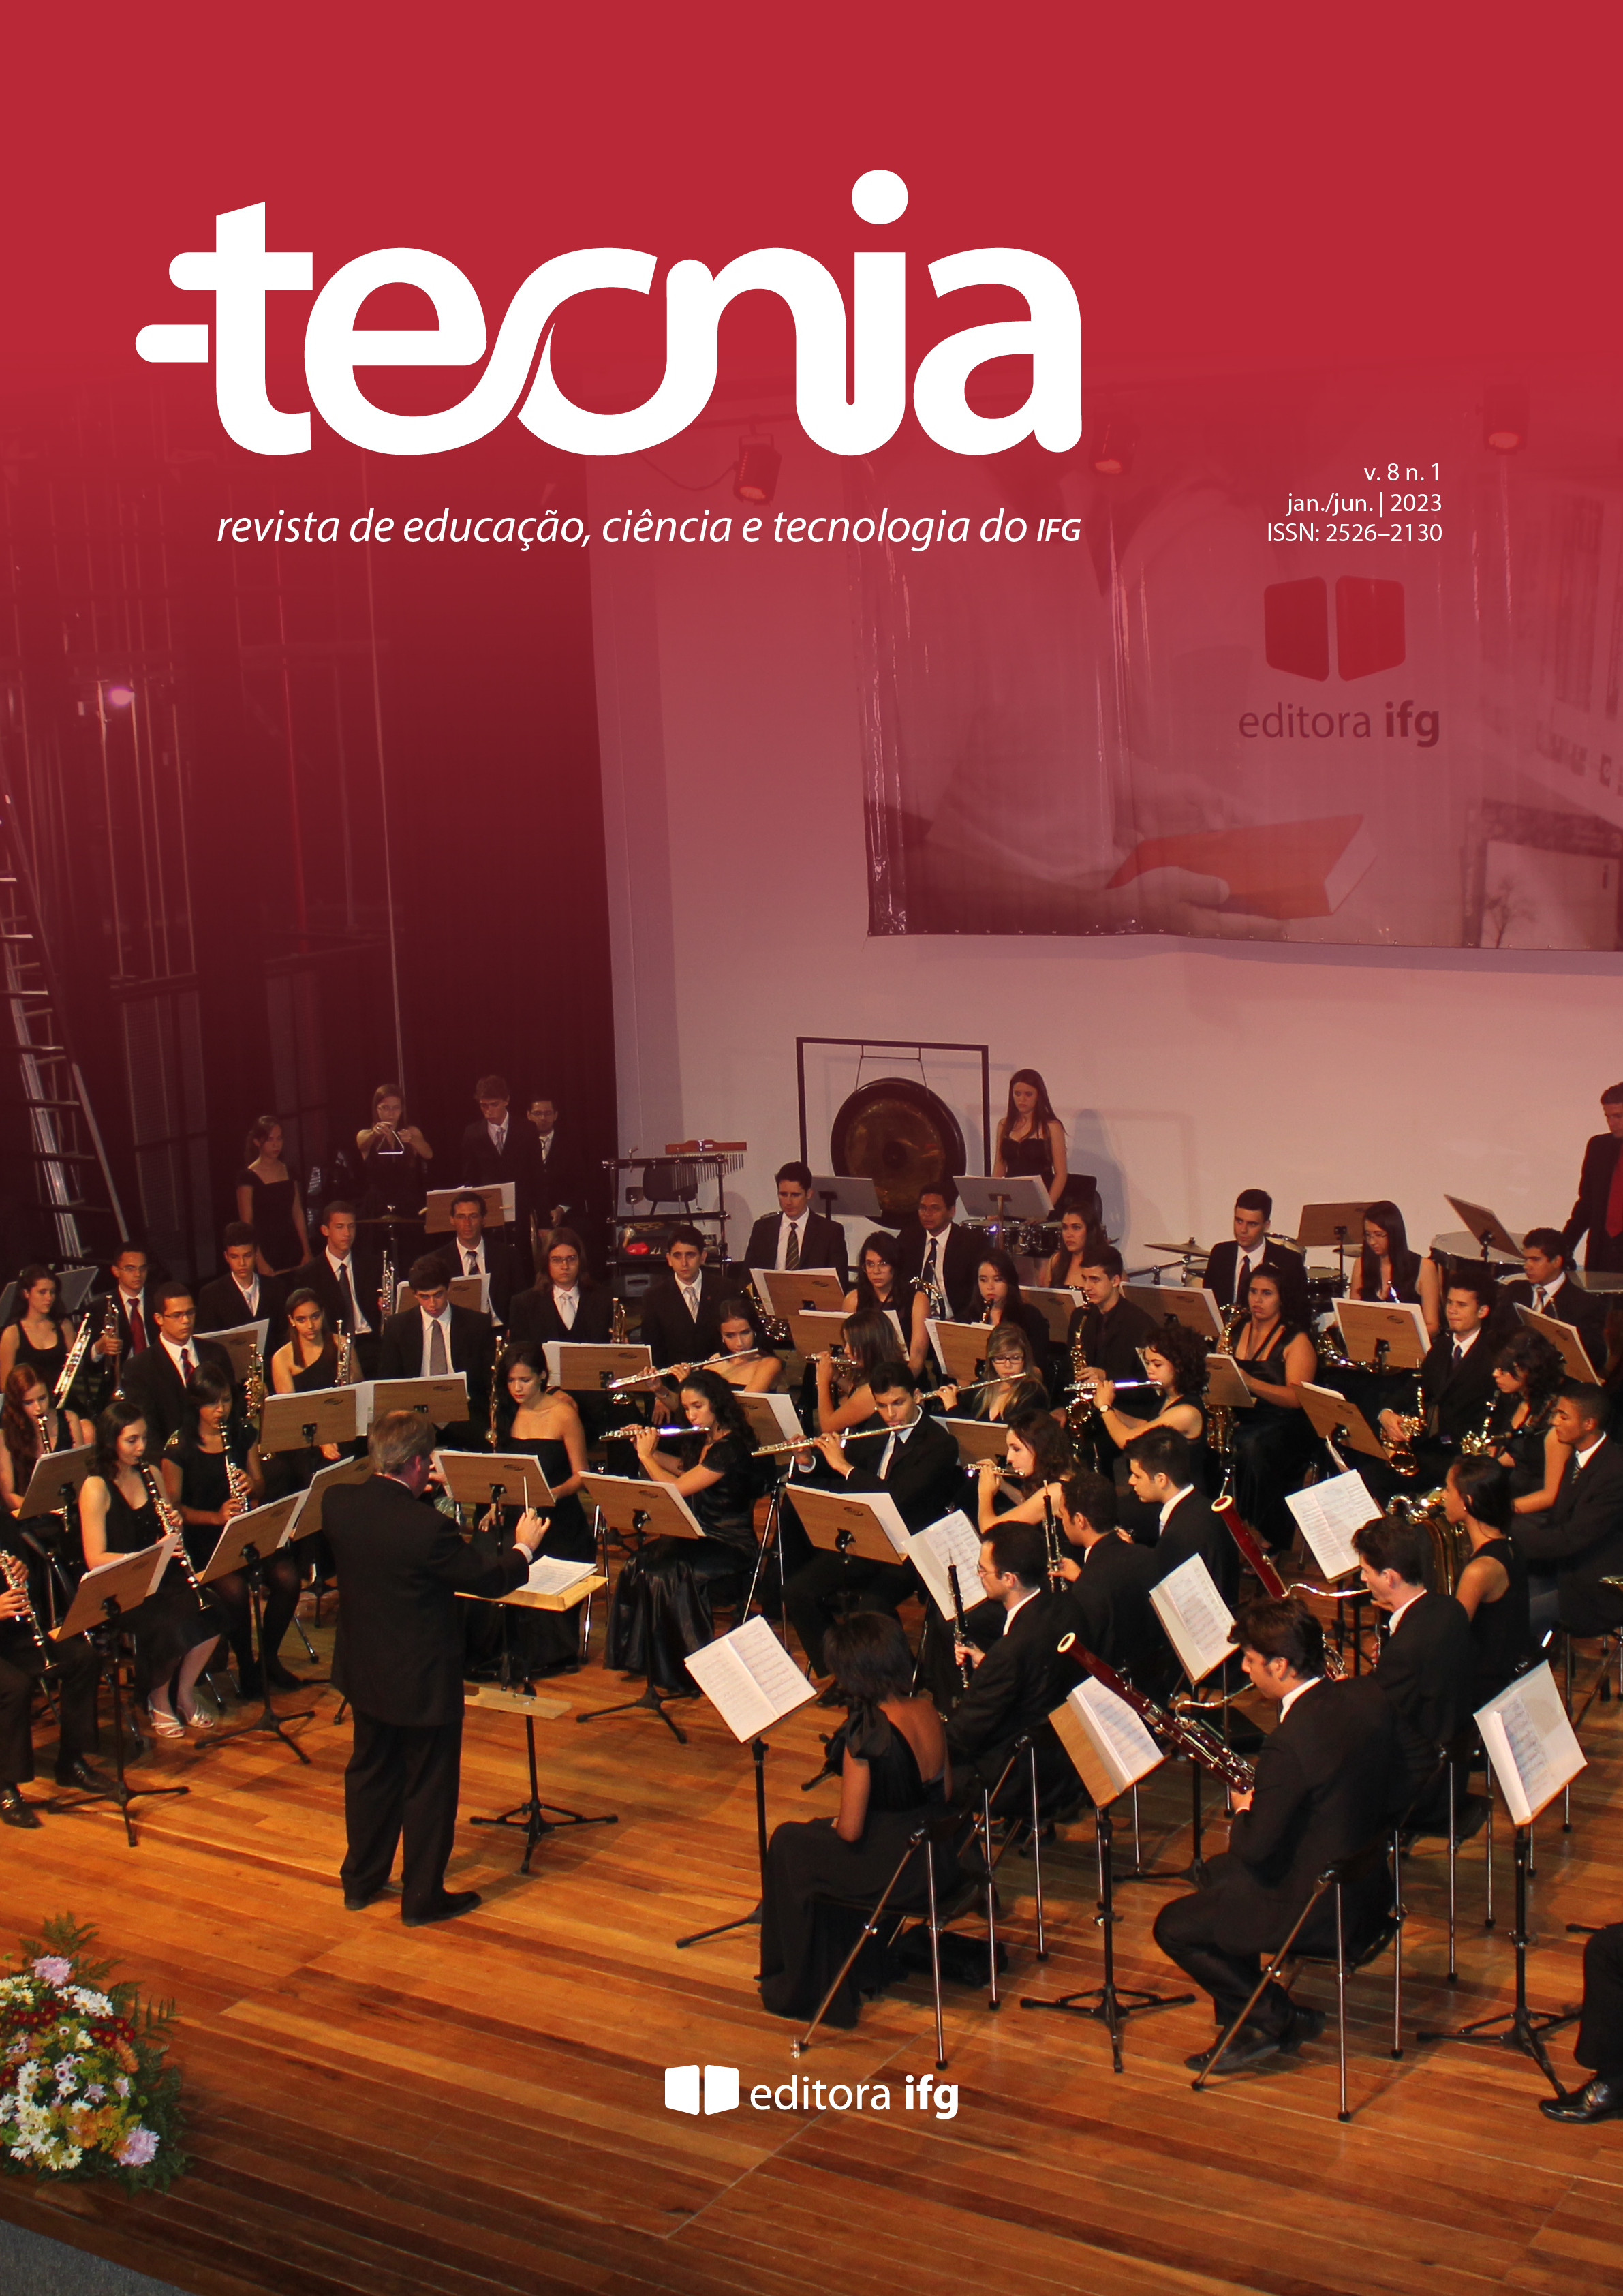 					View Vol. 8 No. 1 (2023): Revista Tecnia
				